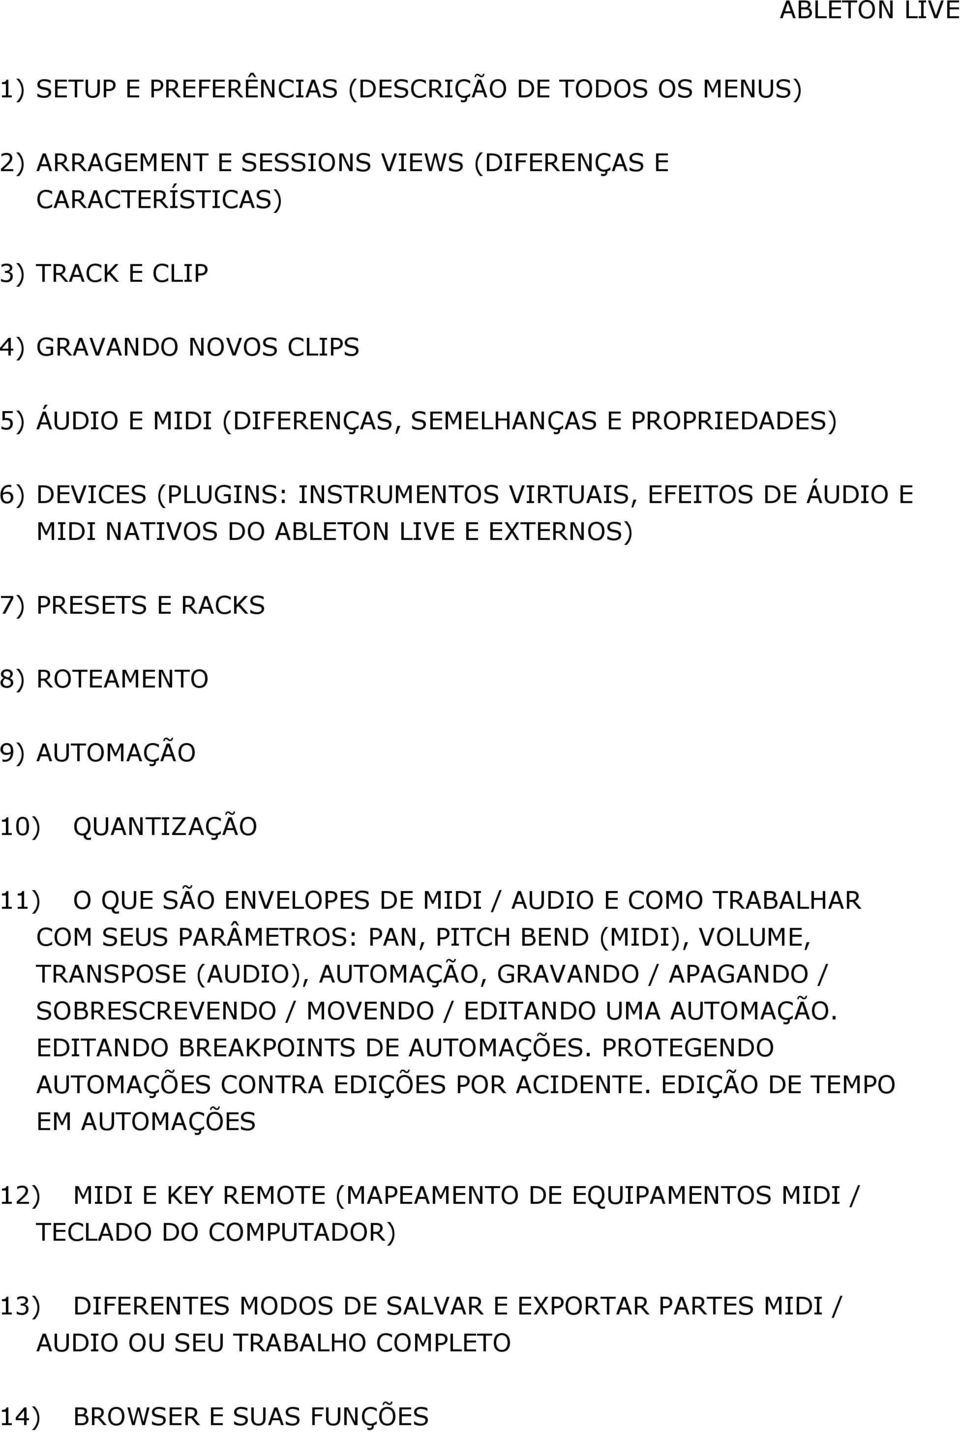 QUE SÃO ENVELOPES DE MIDI / AUDIO E COMO TRABALHAR COM SEUS PARÂMETROS: PAN, PITCH BEND (MIDI), VOLUME, TRANSPOSE (AUDIO), AUTOMAÇÃO, GRAVANDO / APAGANDO / SOBRESCREVENDO / MOVENDO / EDITANDO UMA